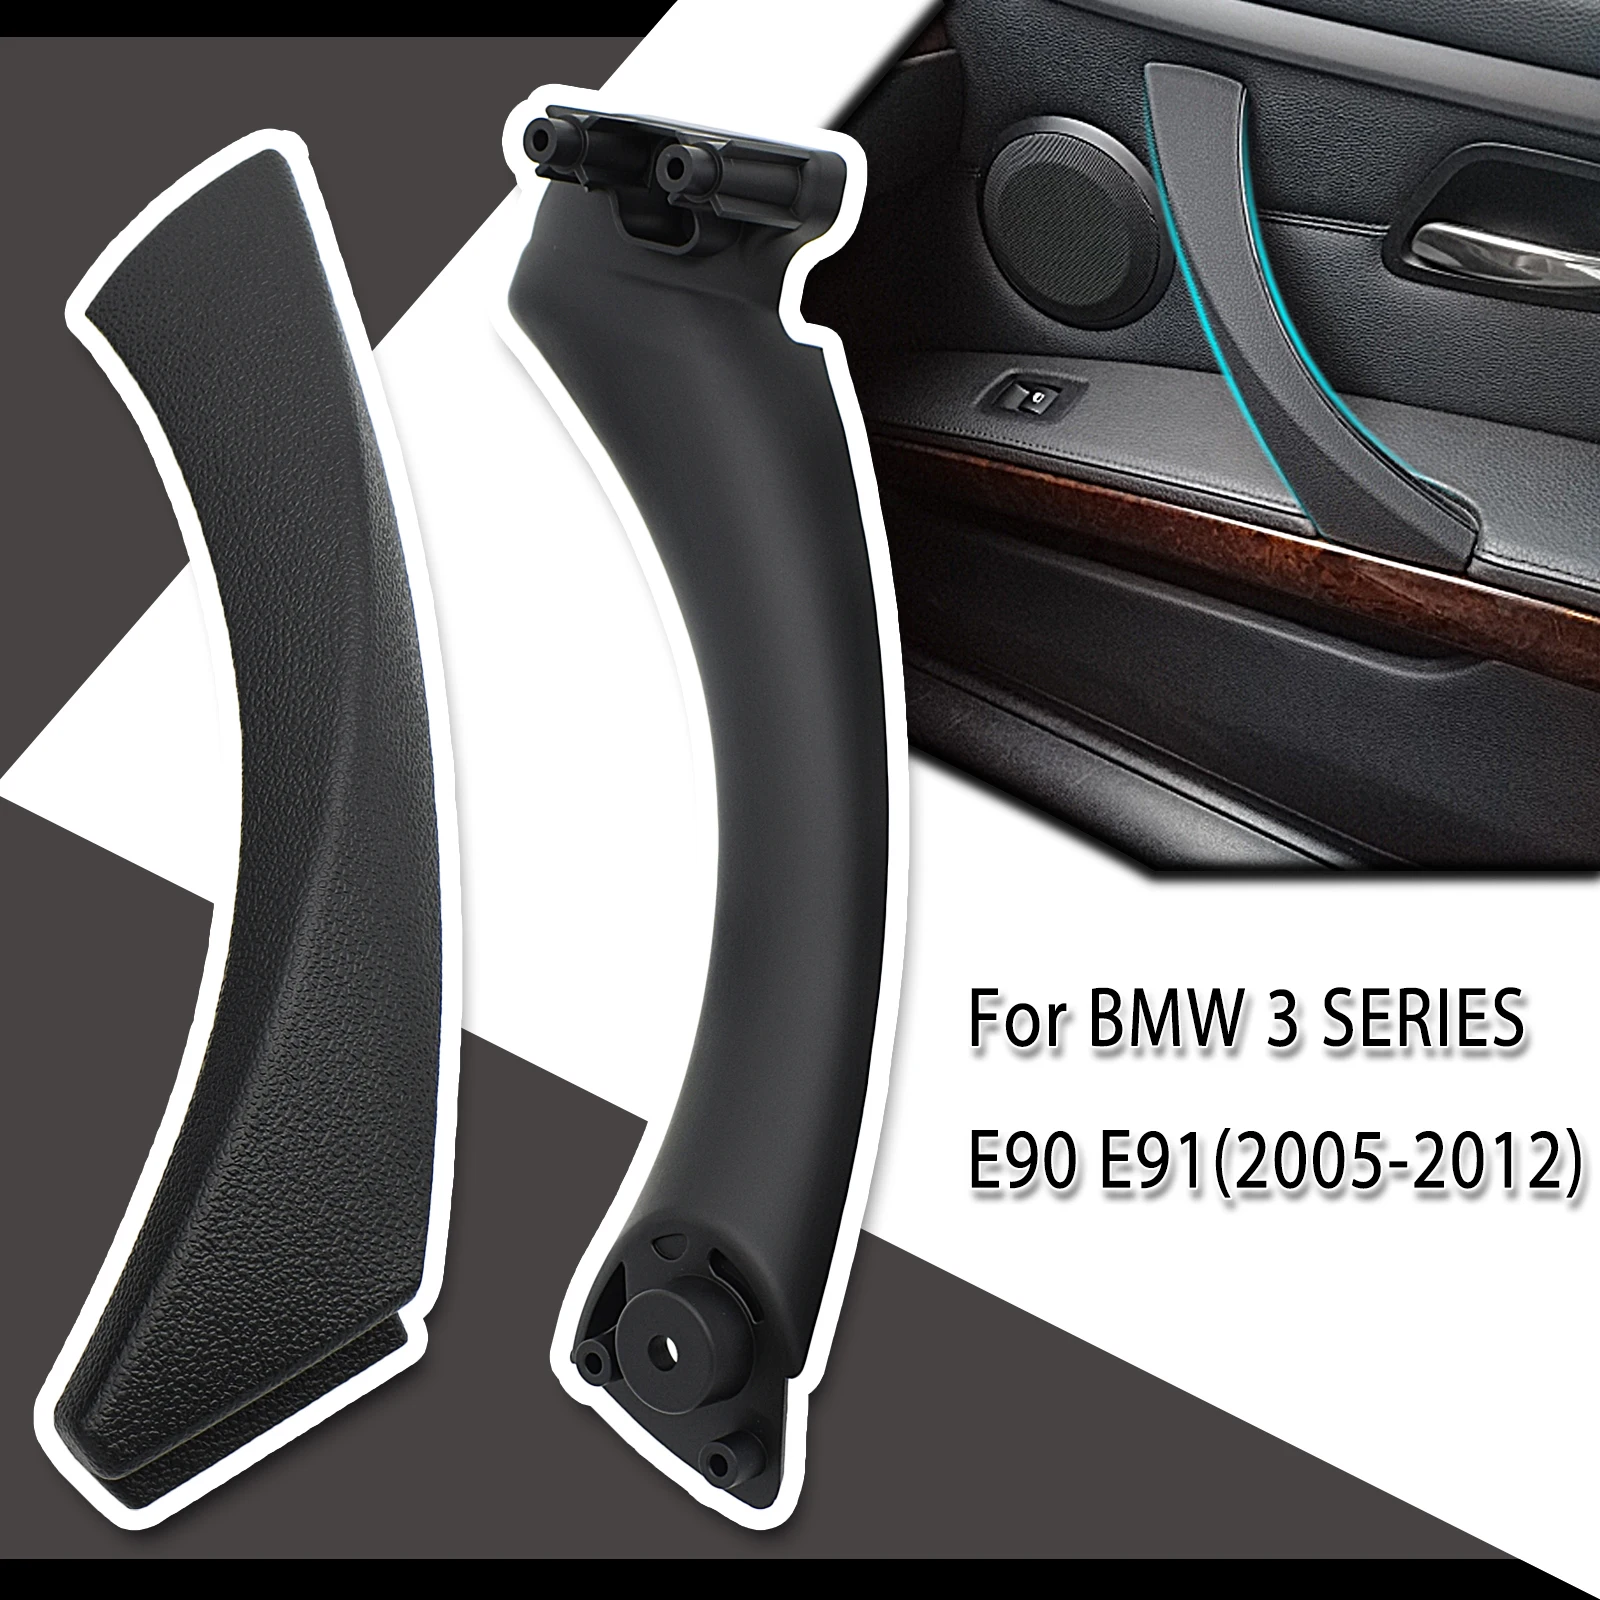 

Для BMW 3 серии E90 E91 316 318 320 325 328 51419150340 внутренняя дверная ручка автомобиля панель Натяжная отделка крышка внутренние запасные части